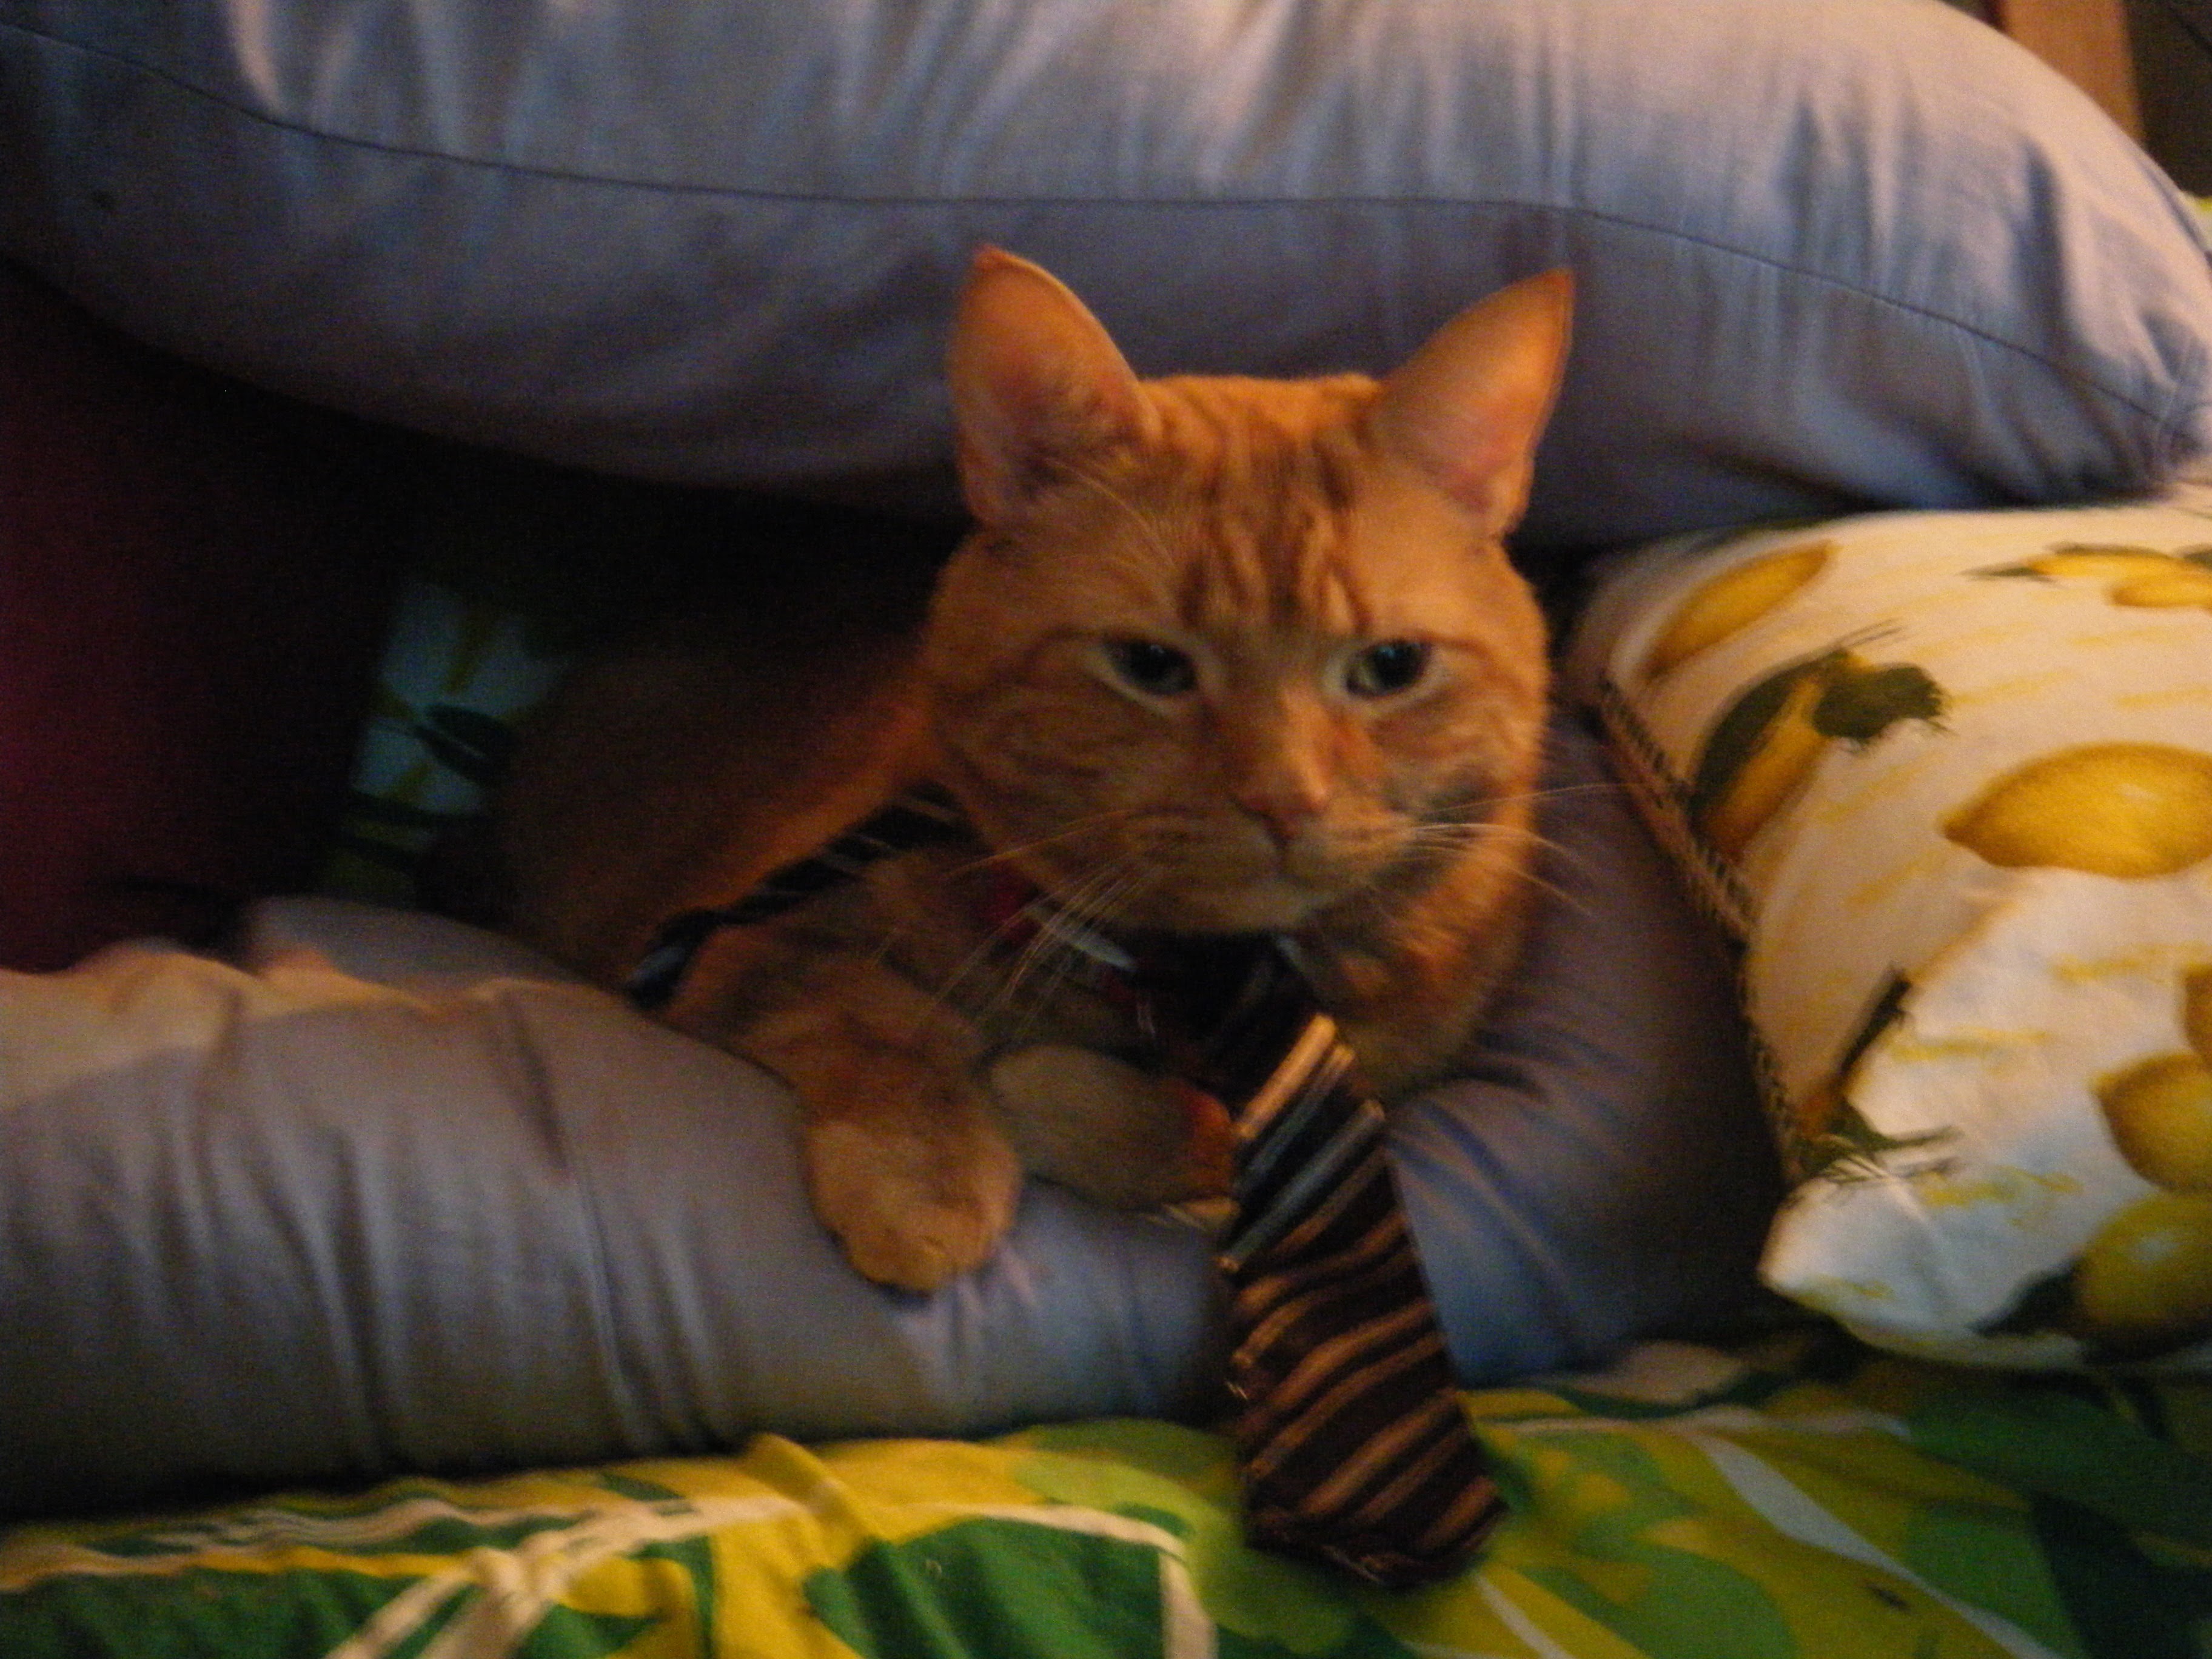 Clément le chat regarde droit devant, mais pas directement l'objectif, arborant sa cravate rayée noir et argenté. Il est allongé sur un oreiller, un autre oreiller formant un petit toit par-dessus lui, soutenu par un coussin rouge et l'oreiller à côté de lui.